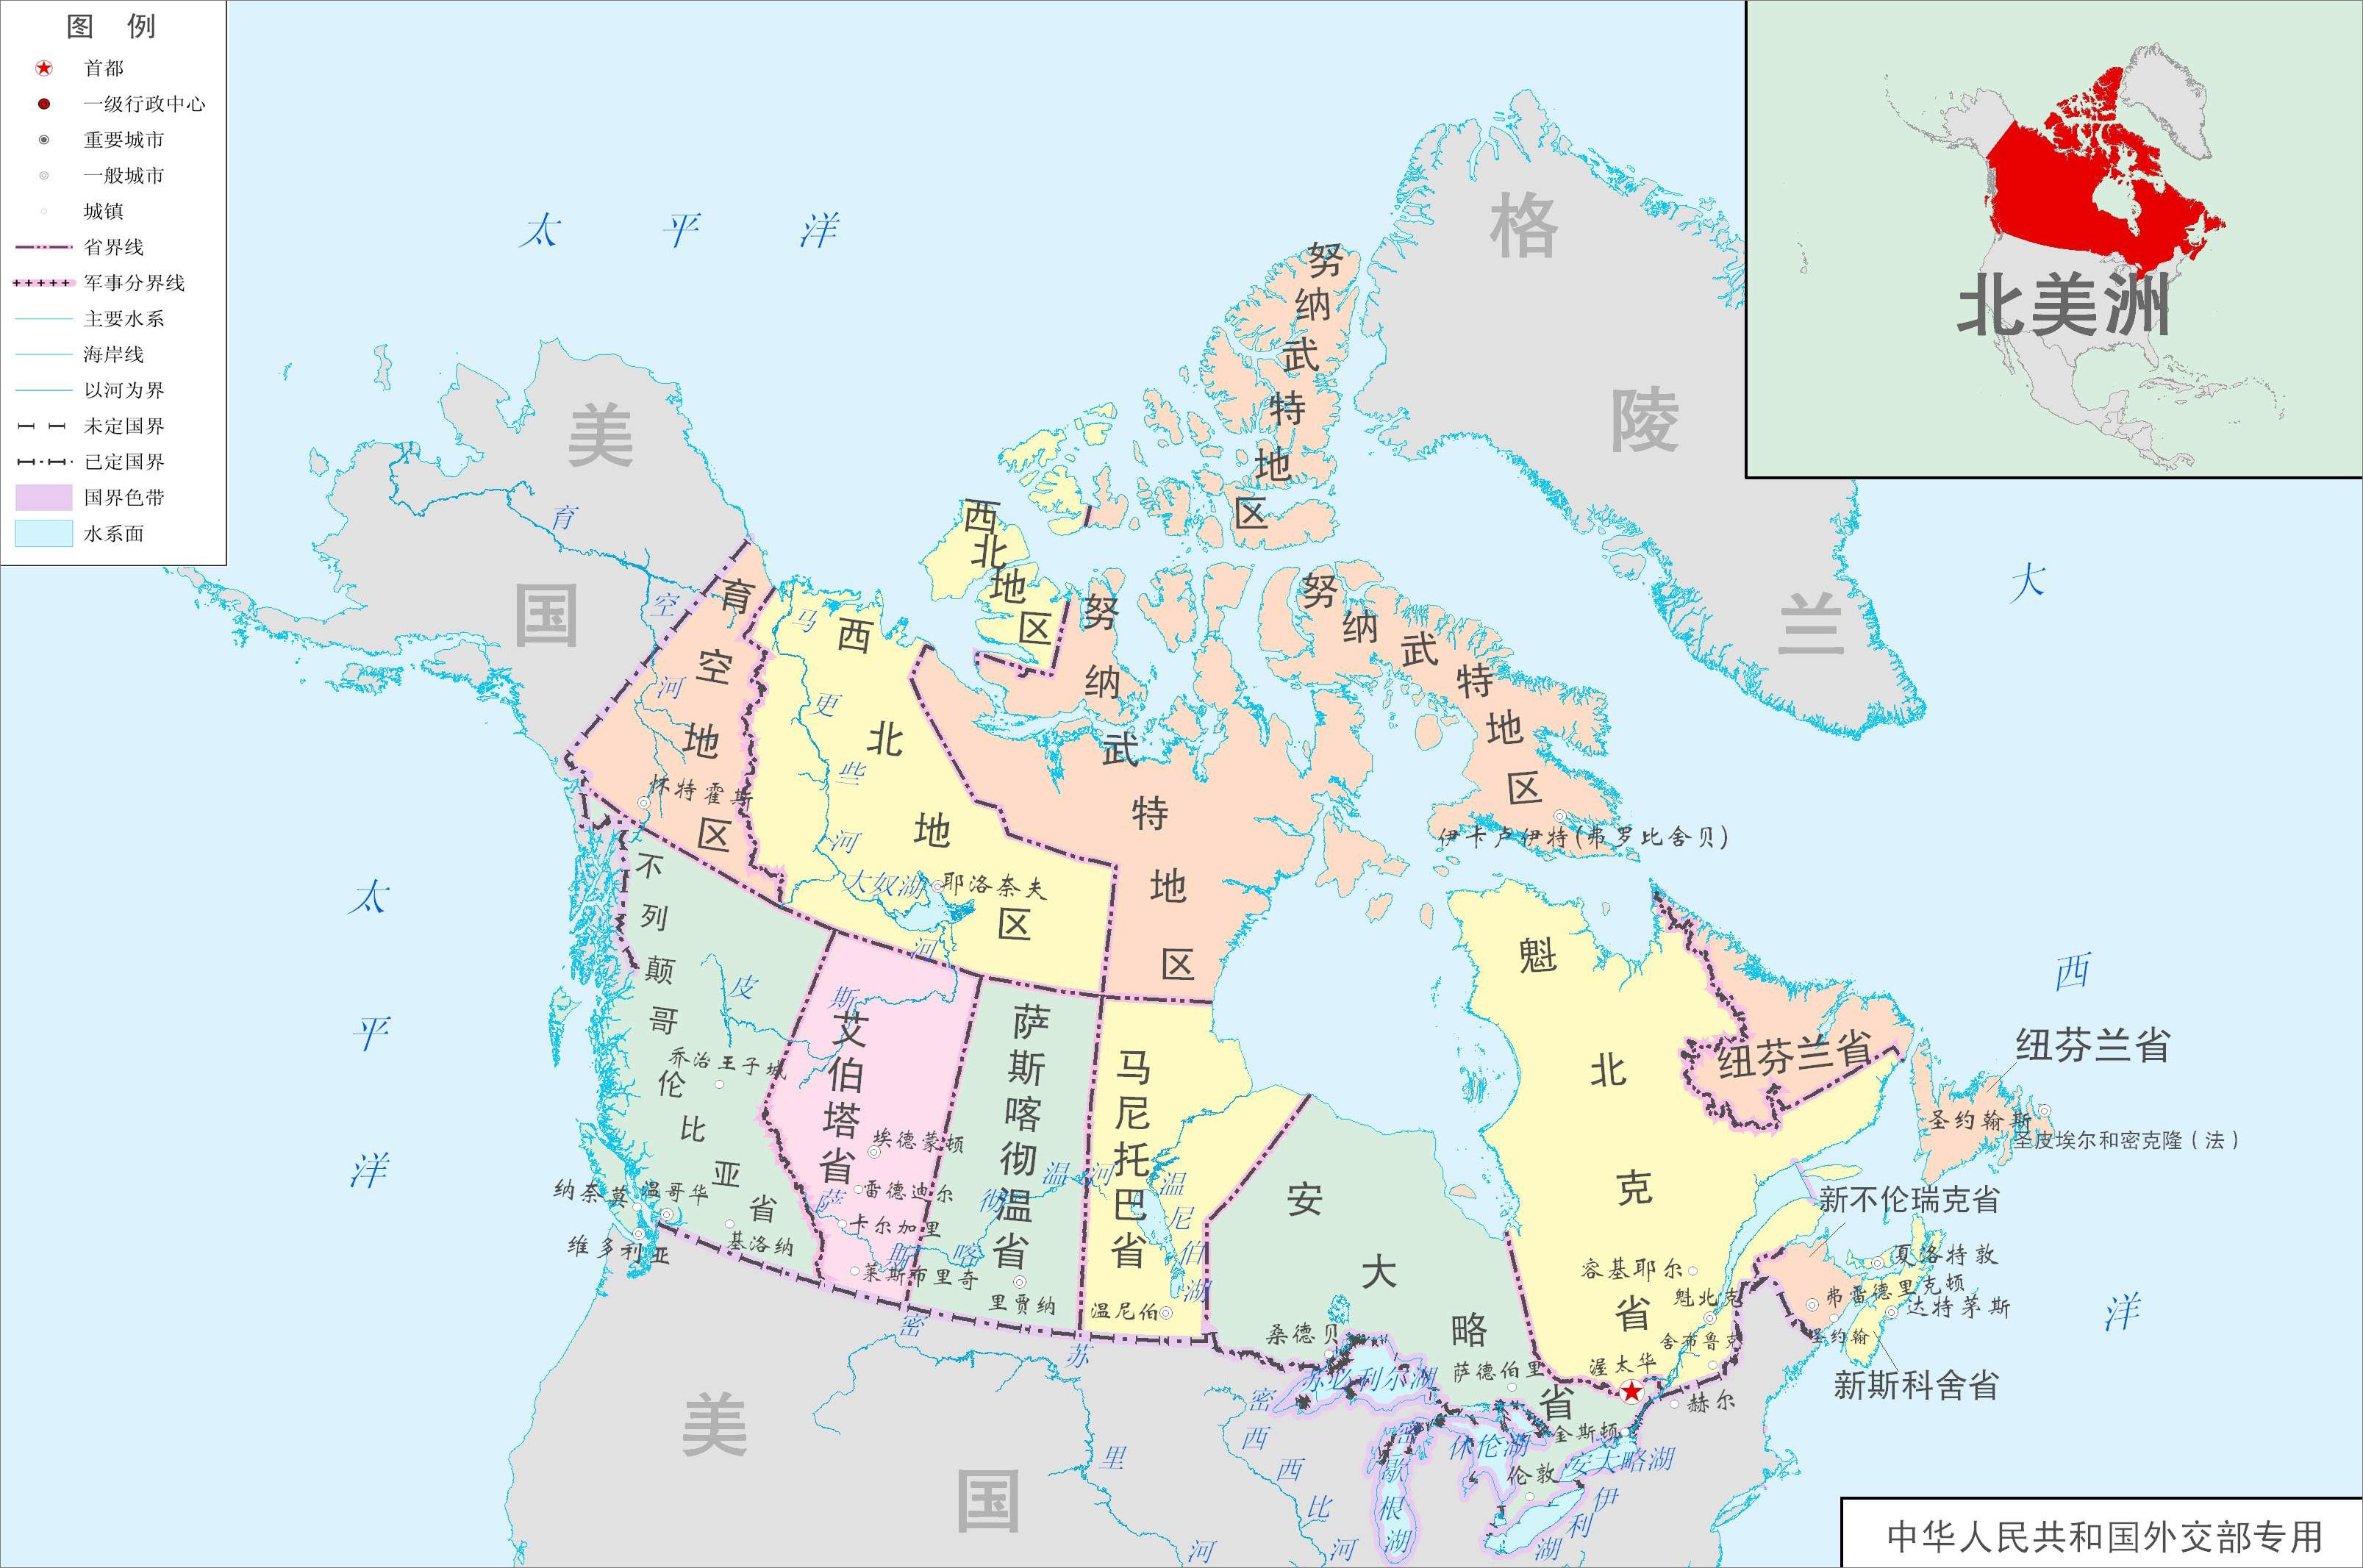 世界地图 北美洲 加拿大  加拿大行政区域图  分类: 加拿大 世界